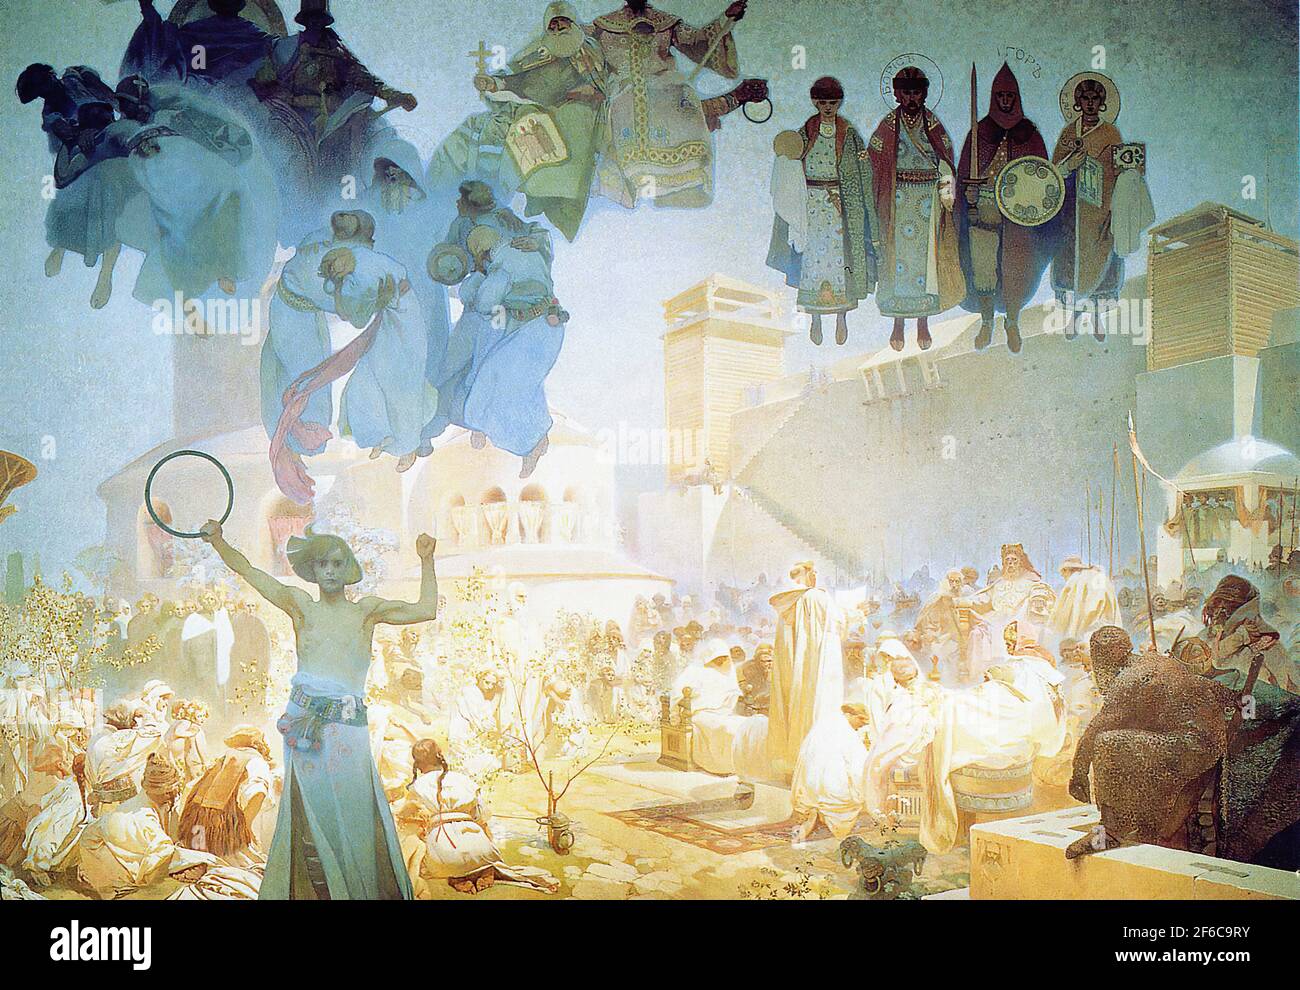 Alfons Mucha - Introduzione Liturgia slavica 1912 Foto Stock